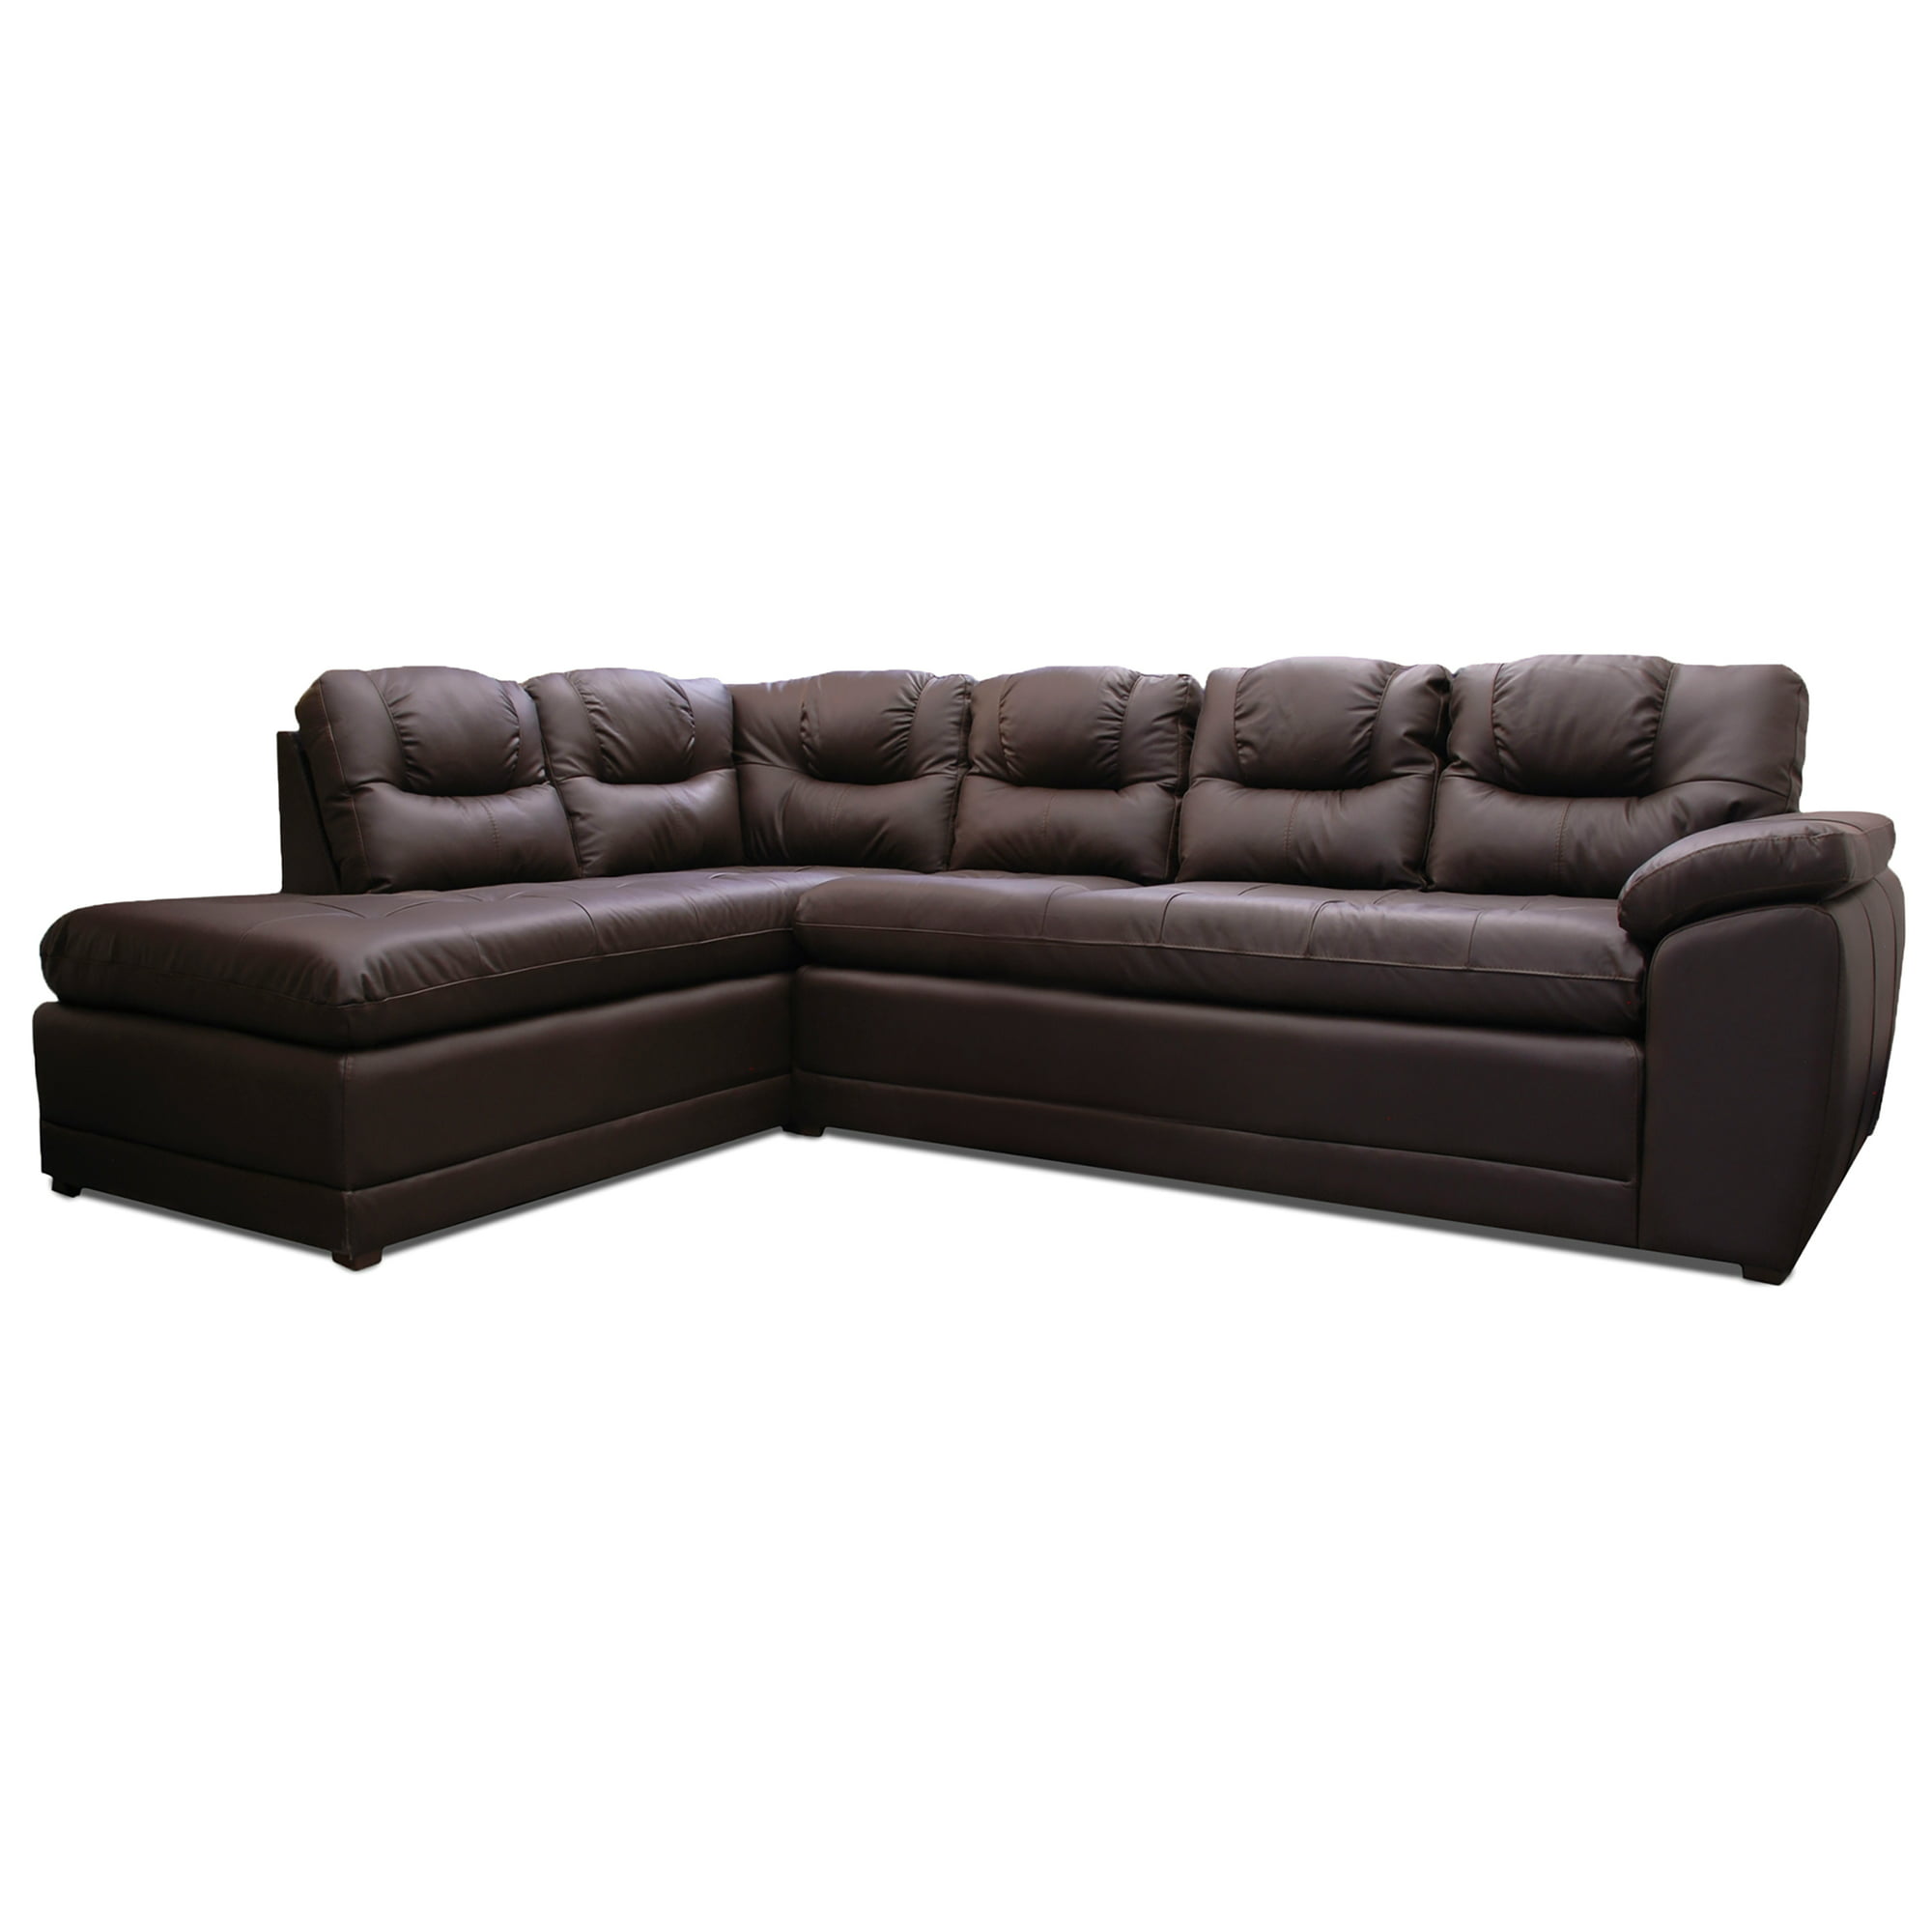 Sala esquinera de piel genuina sofá y cheise long izquierdo confortopiel verona lado izquiedo